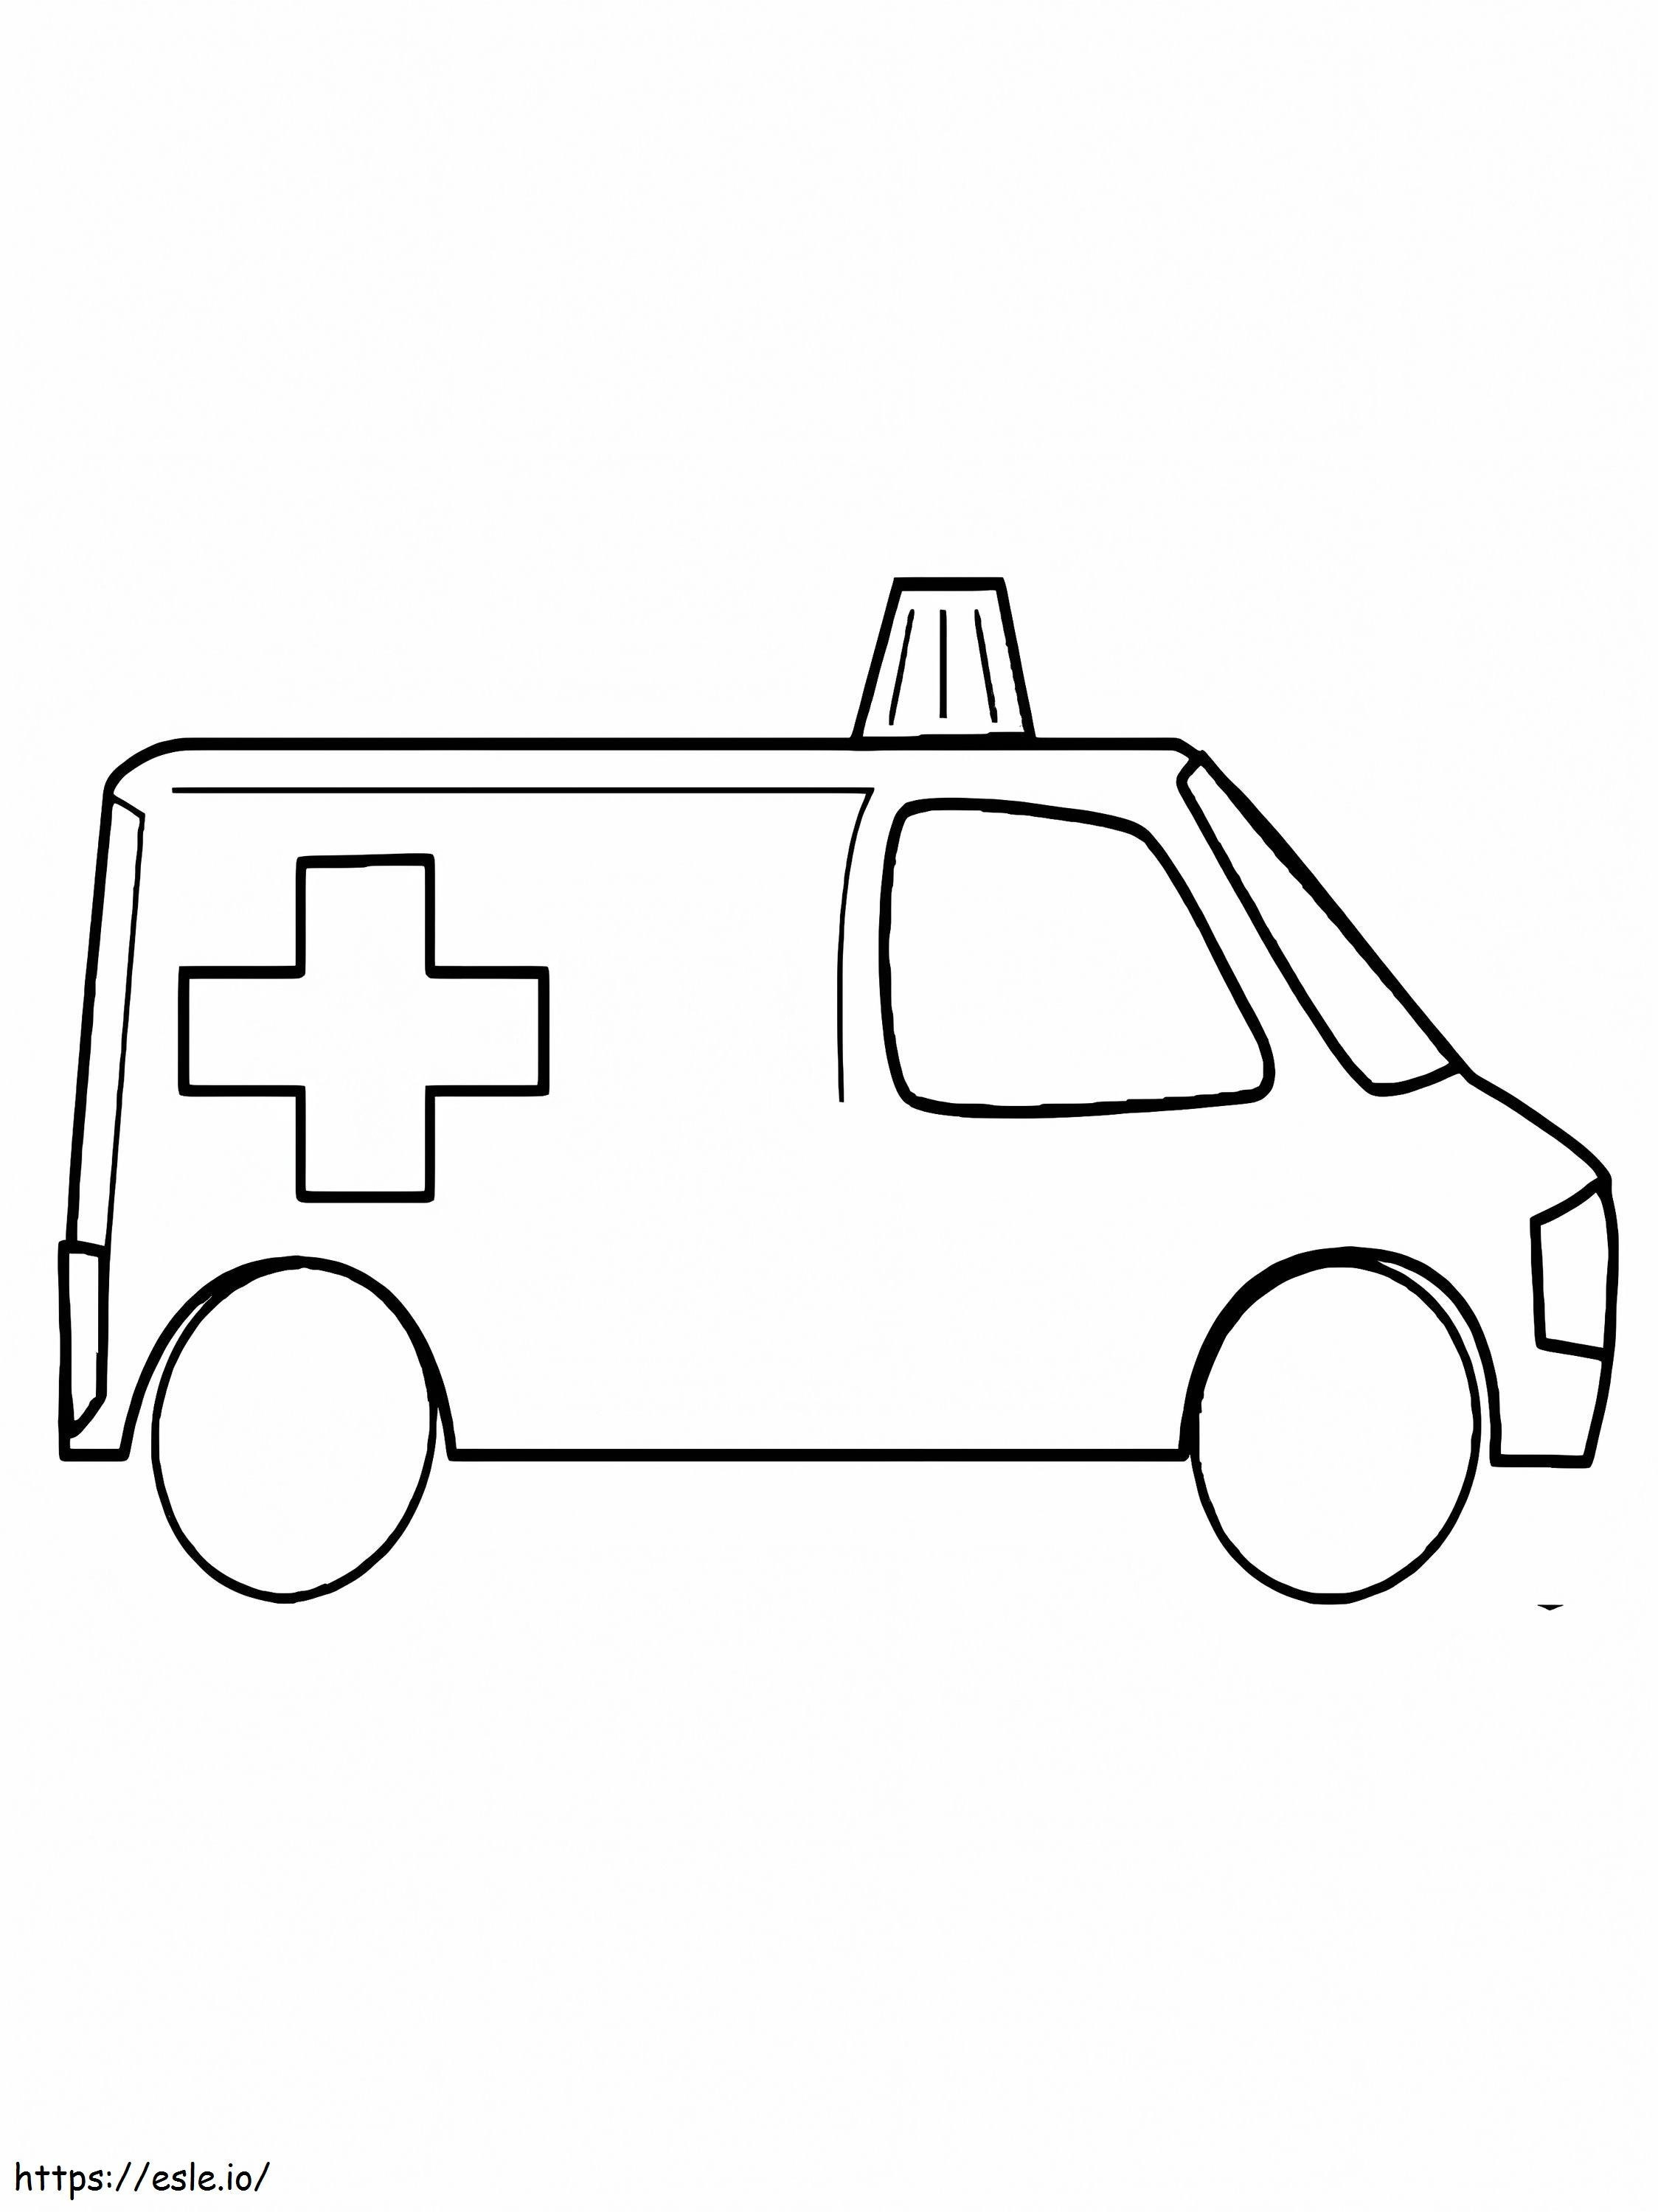 Ambulance 11 coloring page